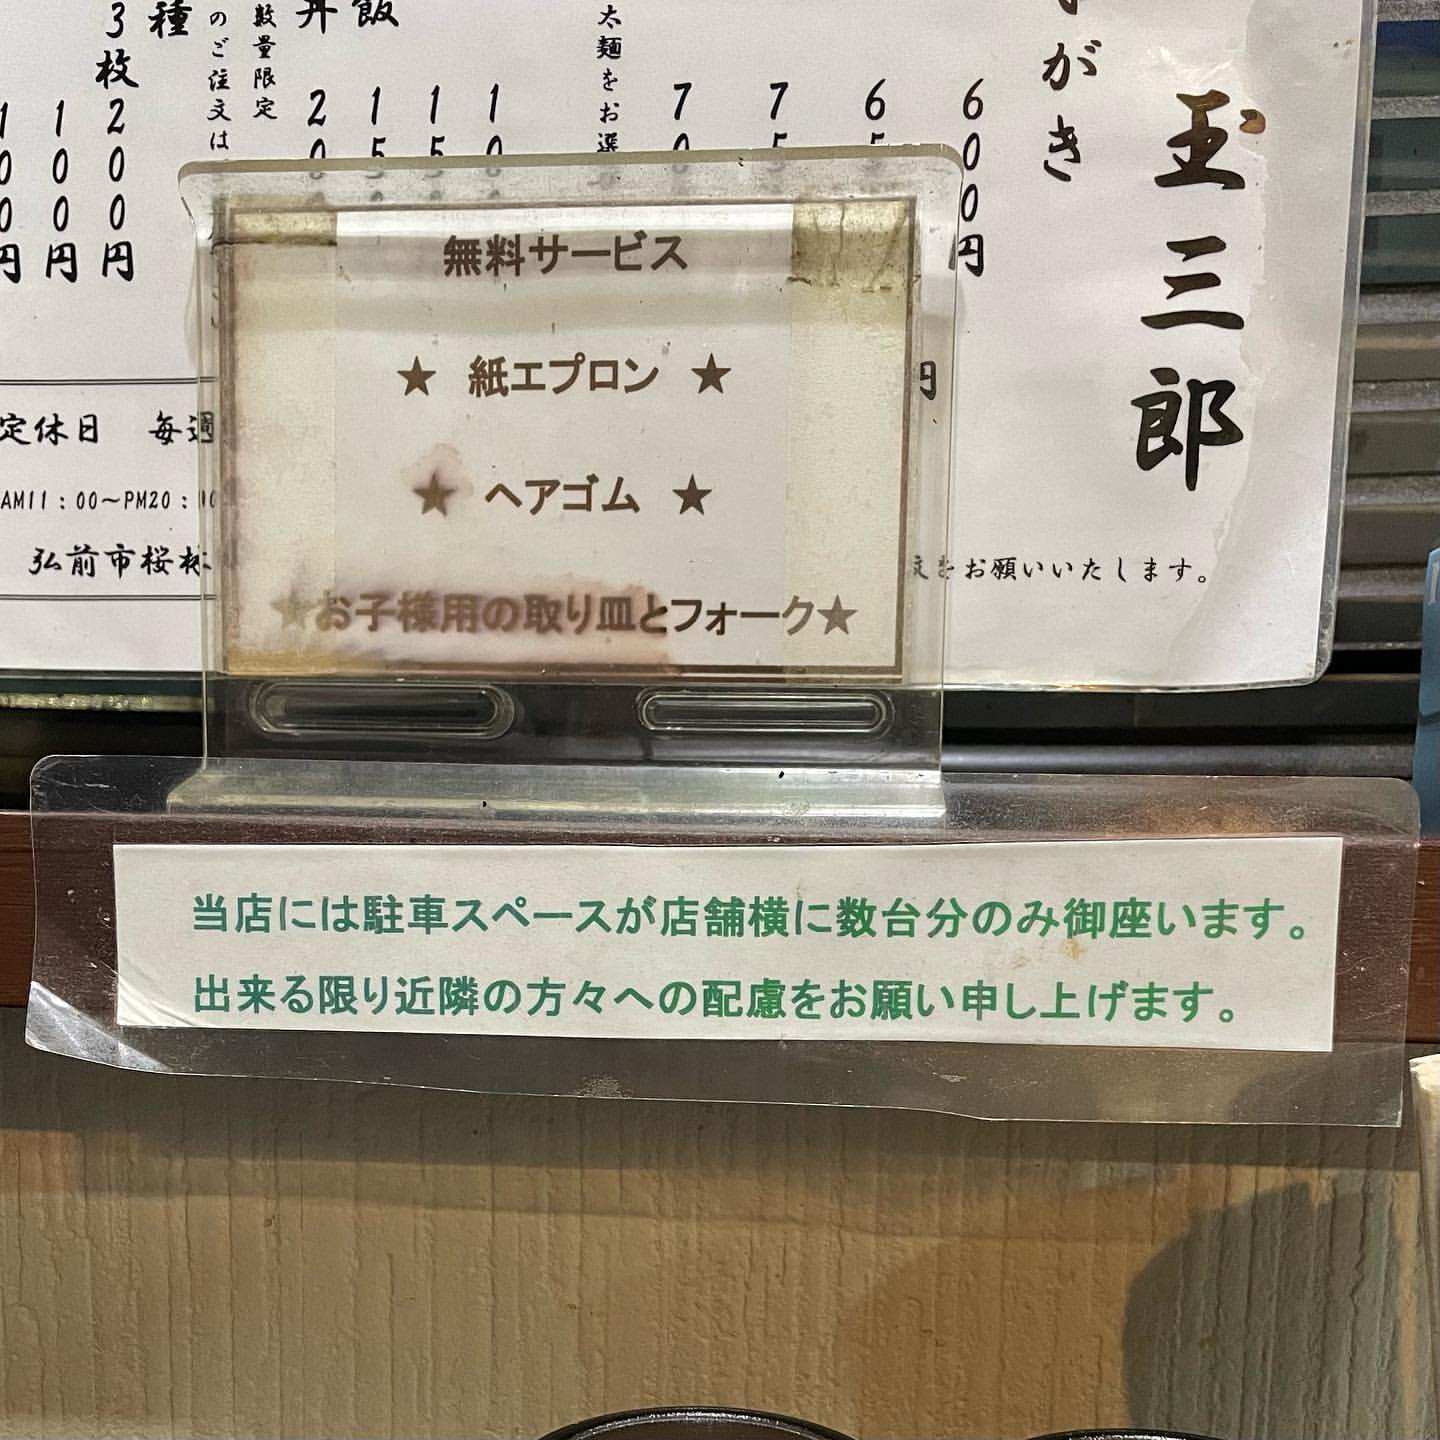 【弘前市・麺屋 玉三郎】メニュー